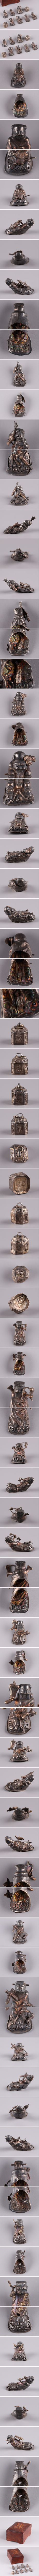 メリット中国古玩 唐物 足銀製 銀製 金具 人物 置物 九点 21g 在印 時代物 極上品 初だし品 3299 その他